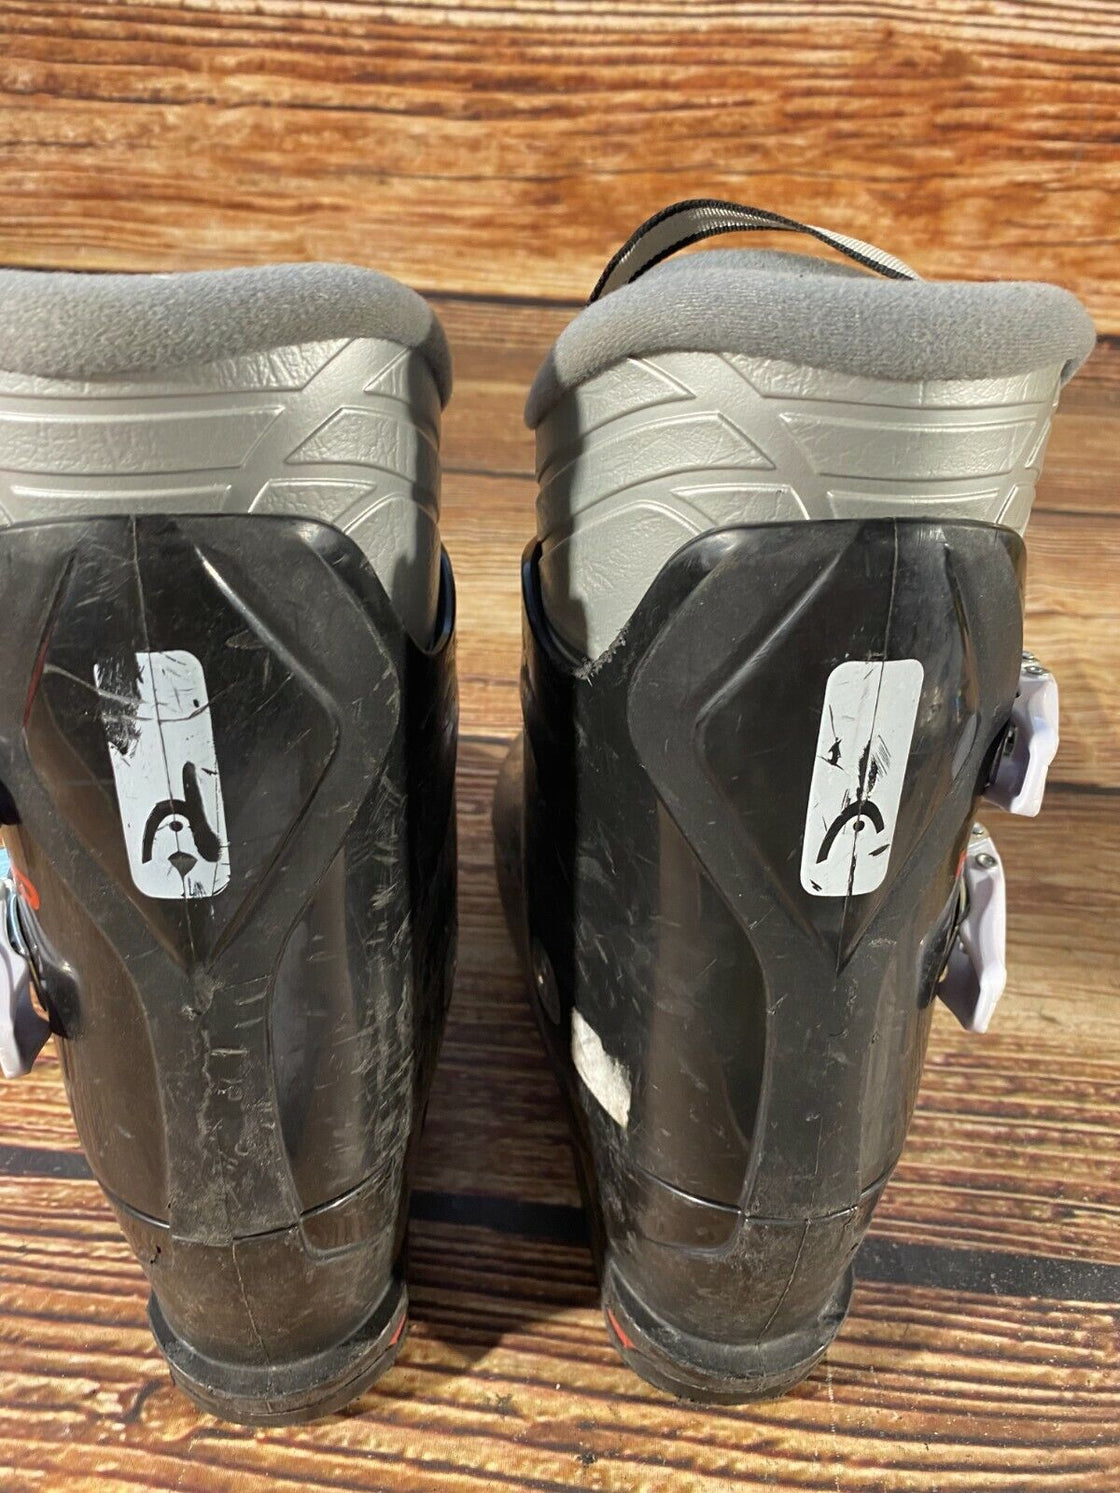 HEAD Alpine Ski Boots Size Mondo 240 - 245 mm, Outer Sole 281 mm